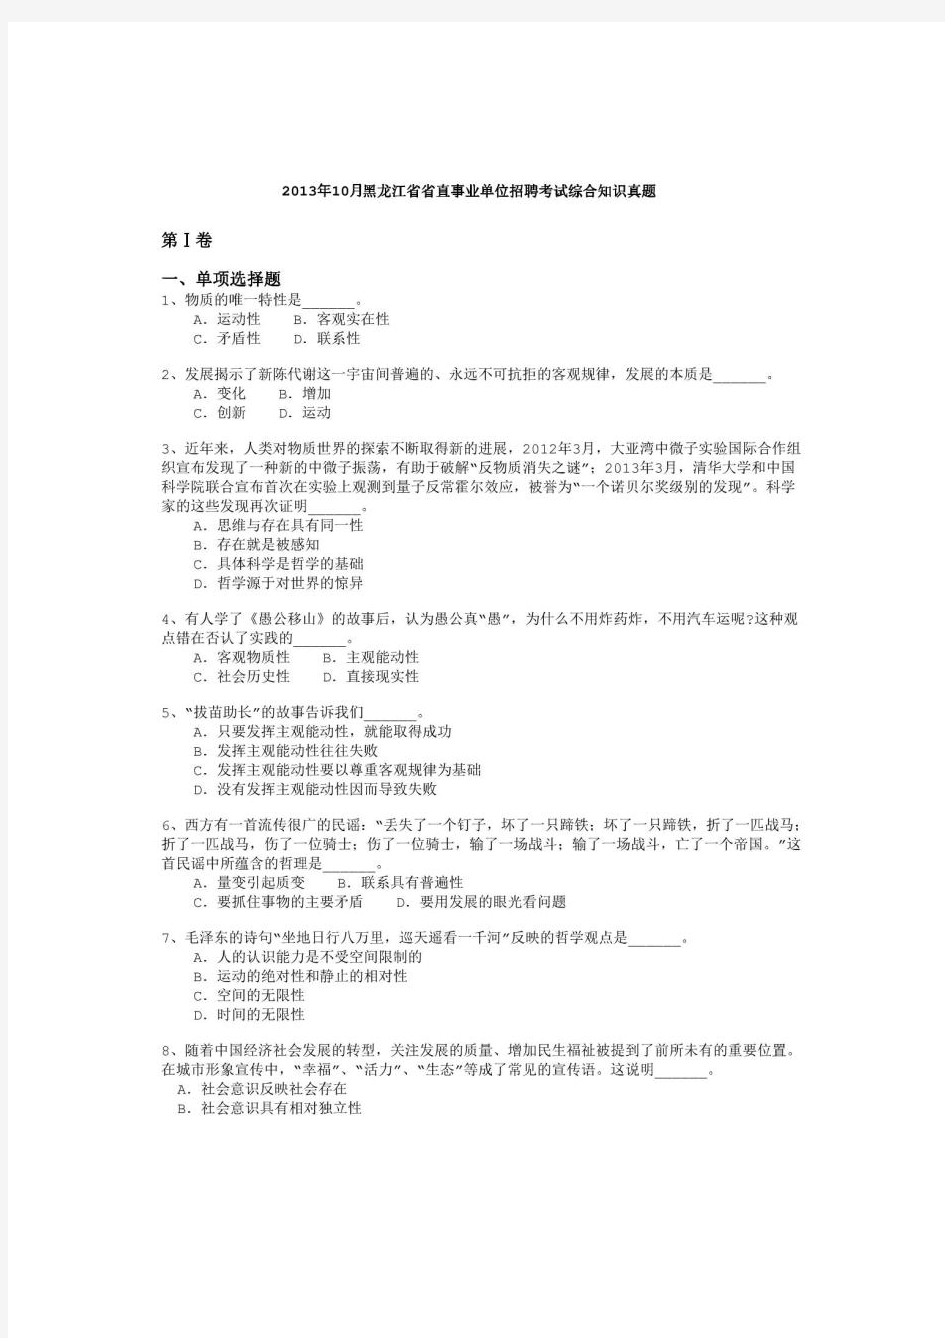 2013年10月黑龙江省省直事业单位招聘考试《综合知识》真题及详解-b